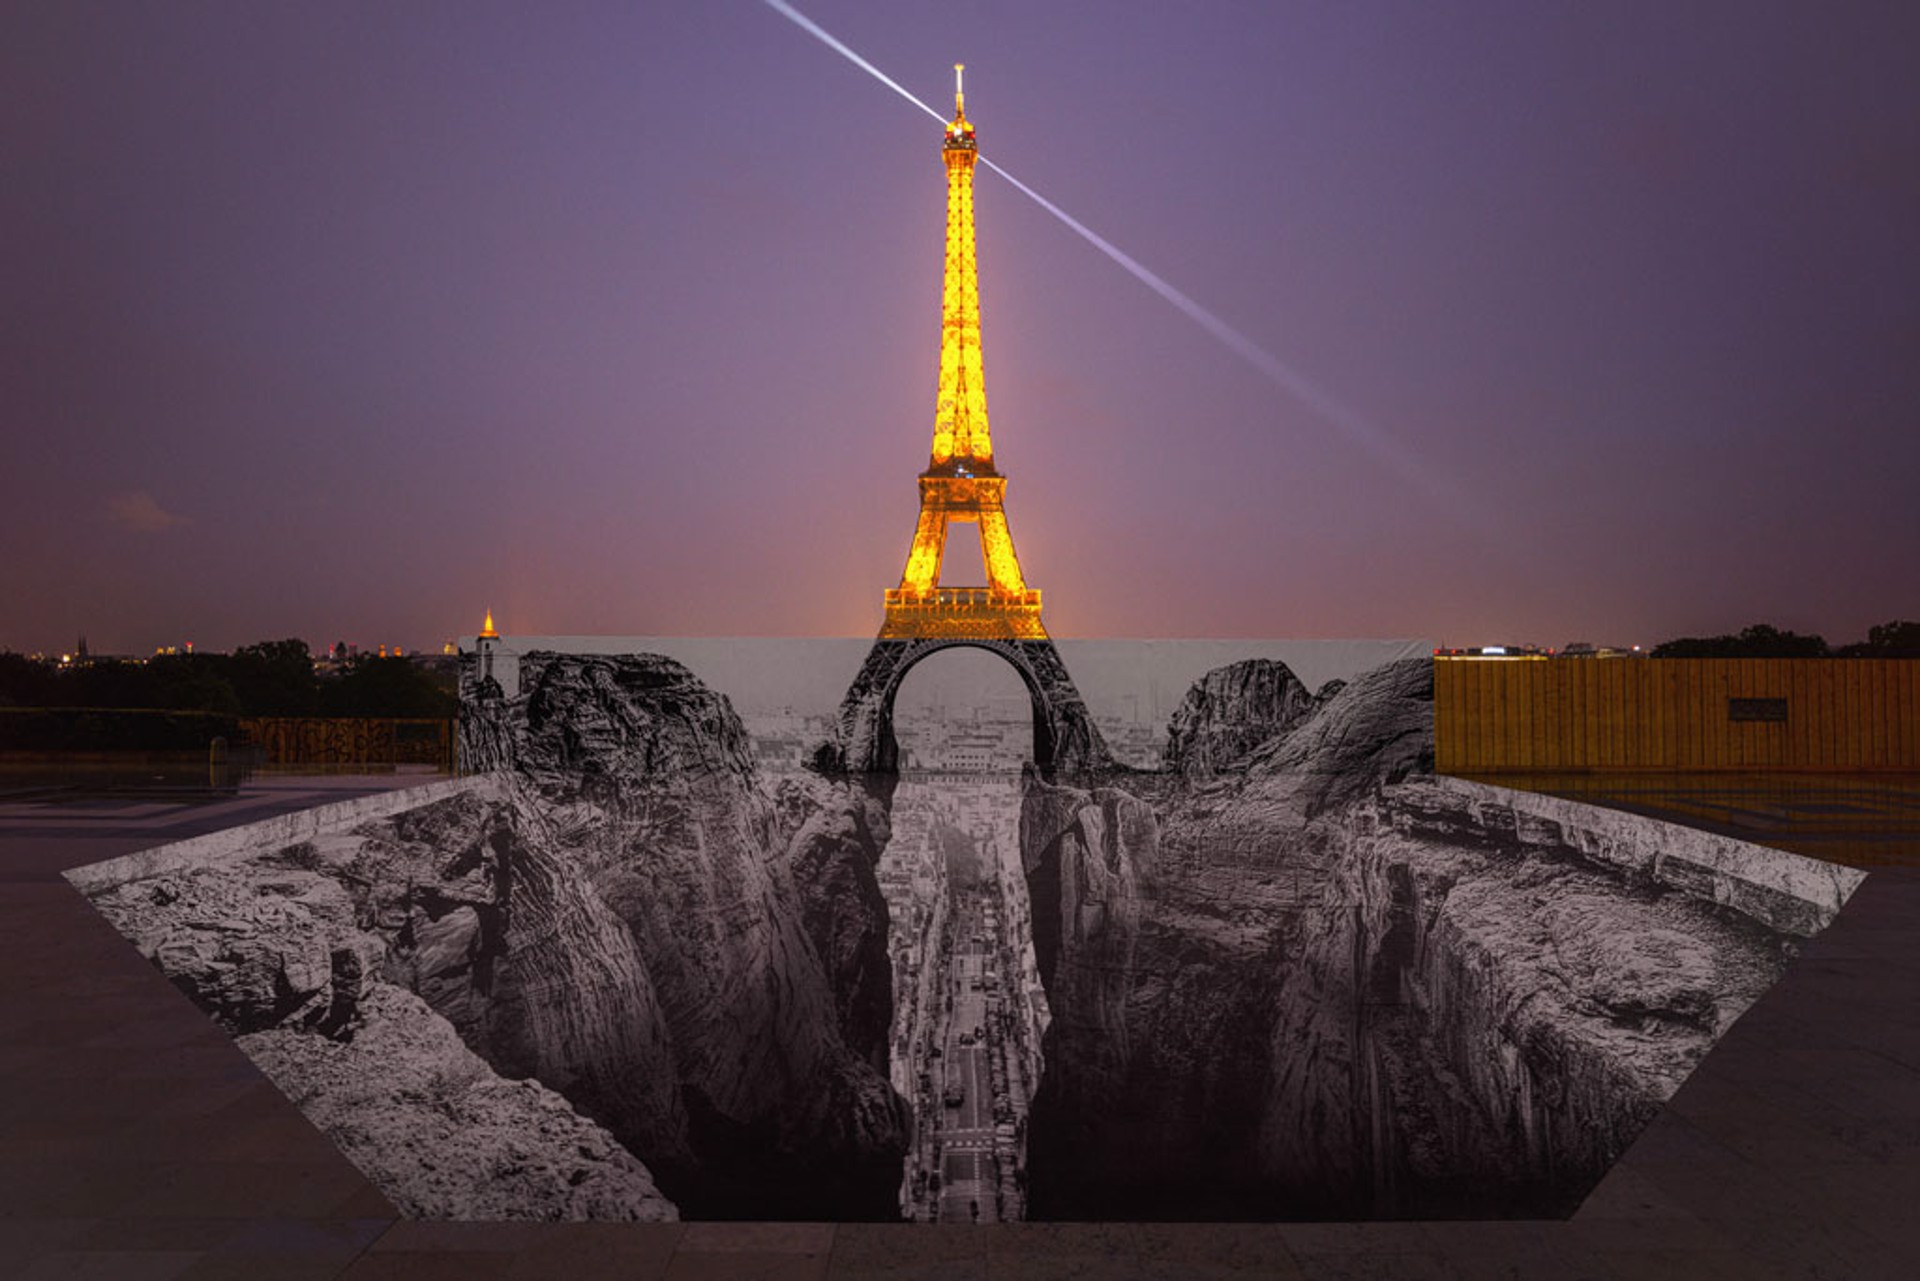 Trompe l'oeil, Les Falaises du Trocadéro, 25 mai 2021, 22h18, Paris, France, 2021 by JR